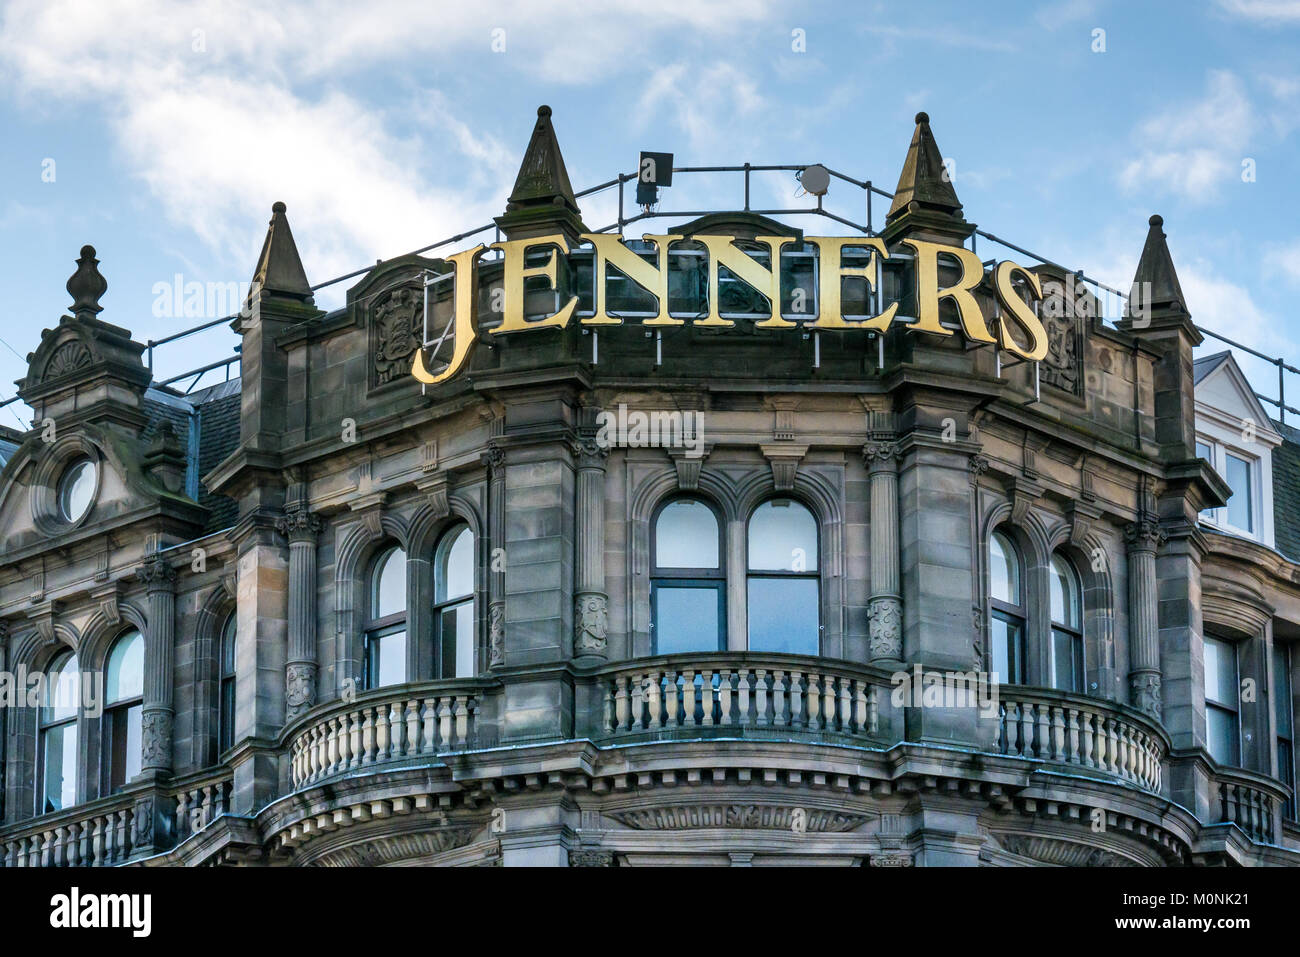 Magasin Jenners nom d'or, signe de grosses lettres en haut du grand bâtiment Victorien, St Andrews Square, Édimbourg, Écosse, Royaume-Uni Banque D'Images